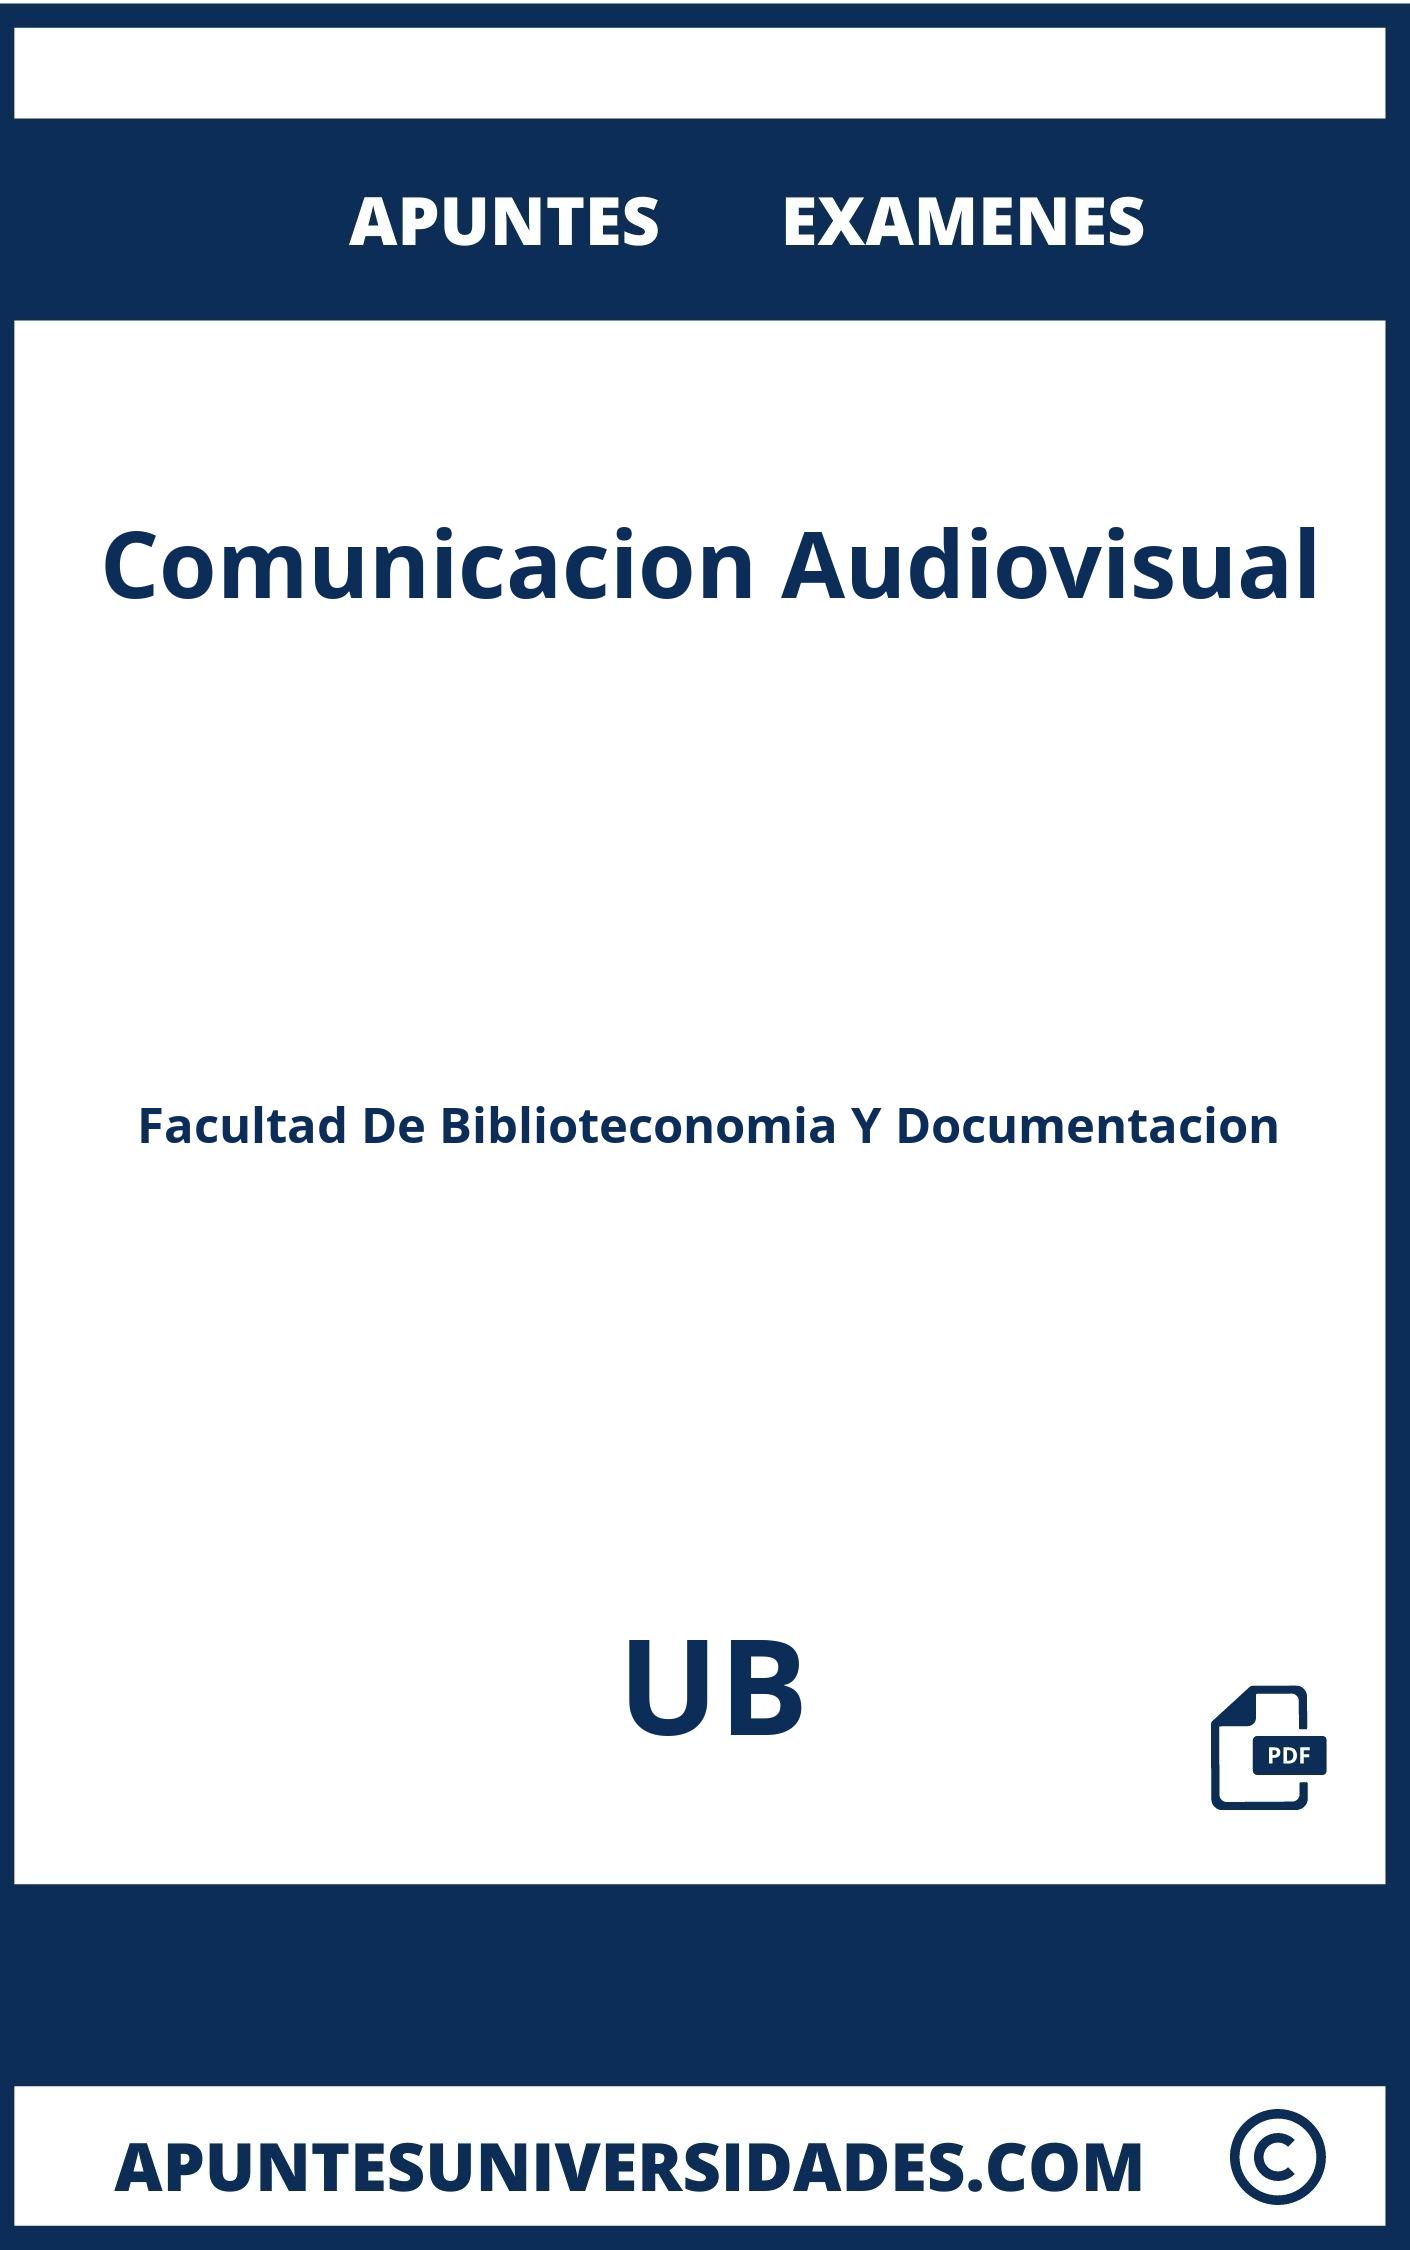 Examenes y Apuntes Comunicacion Audiovisual UB